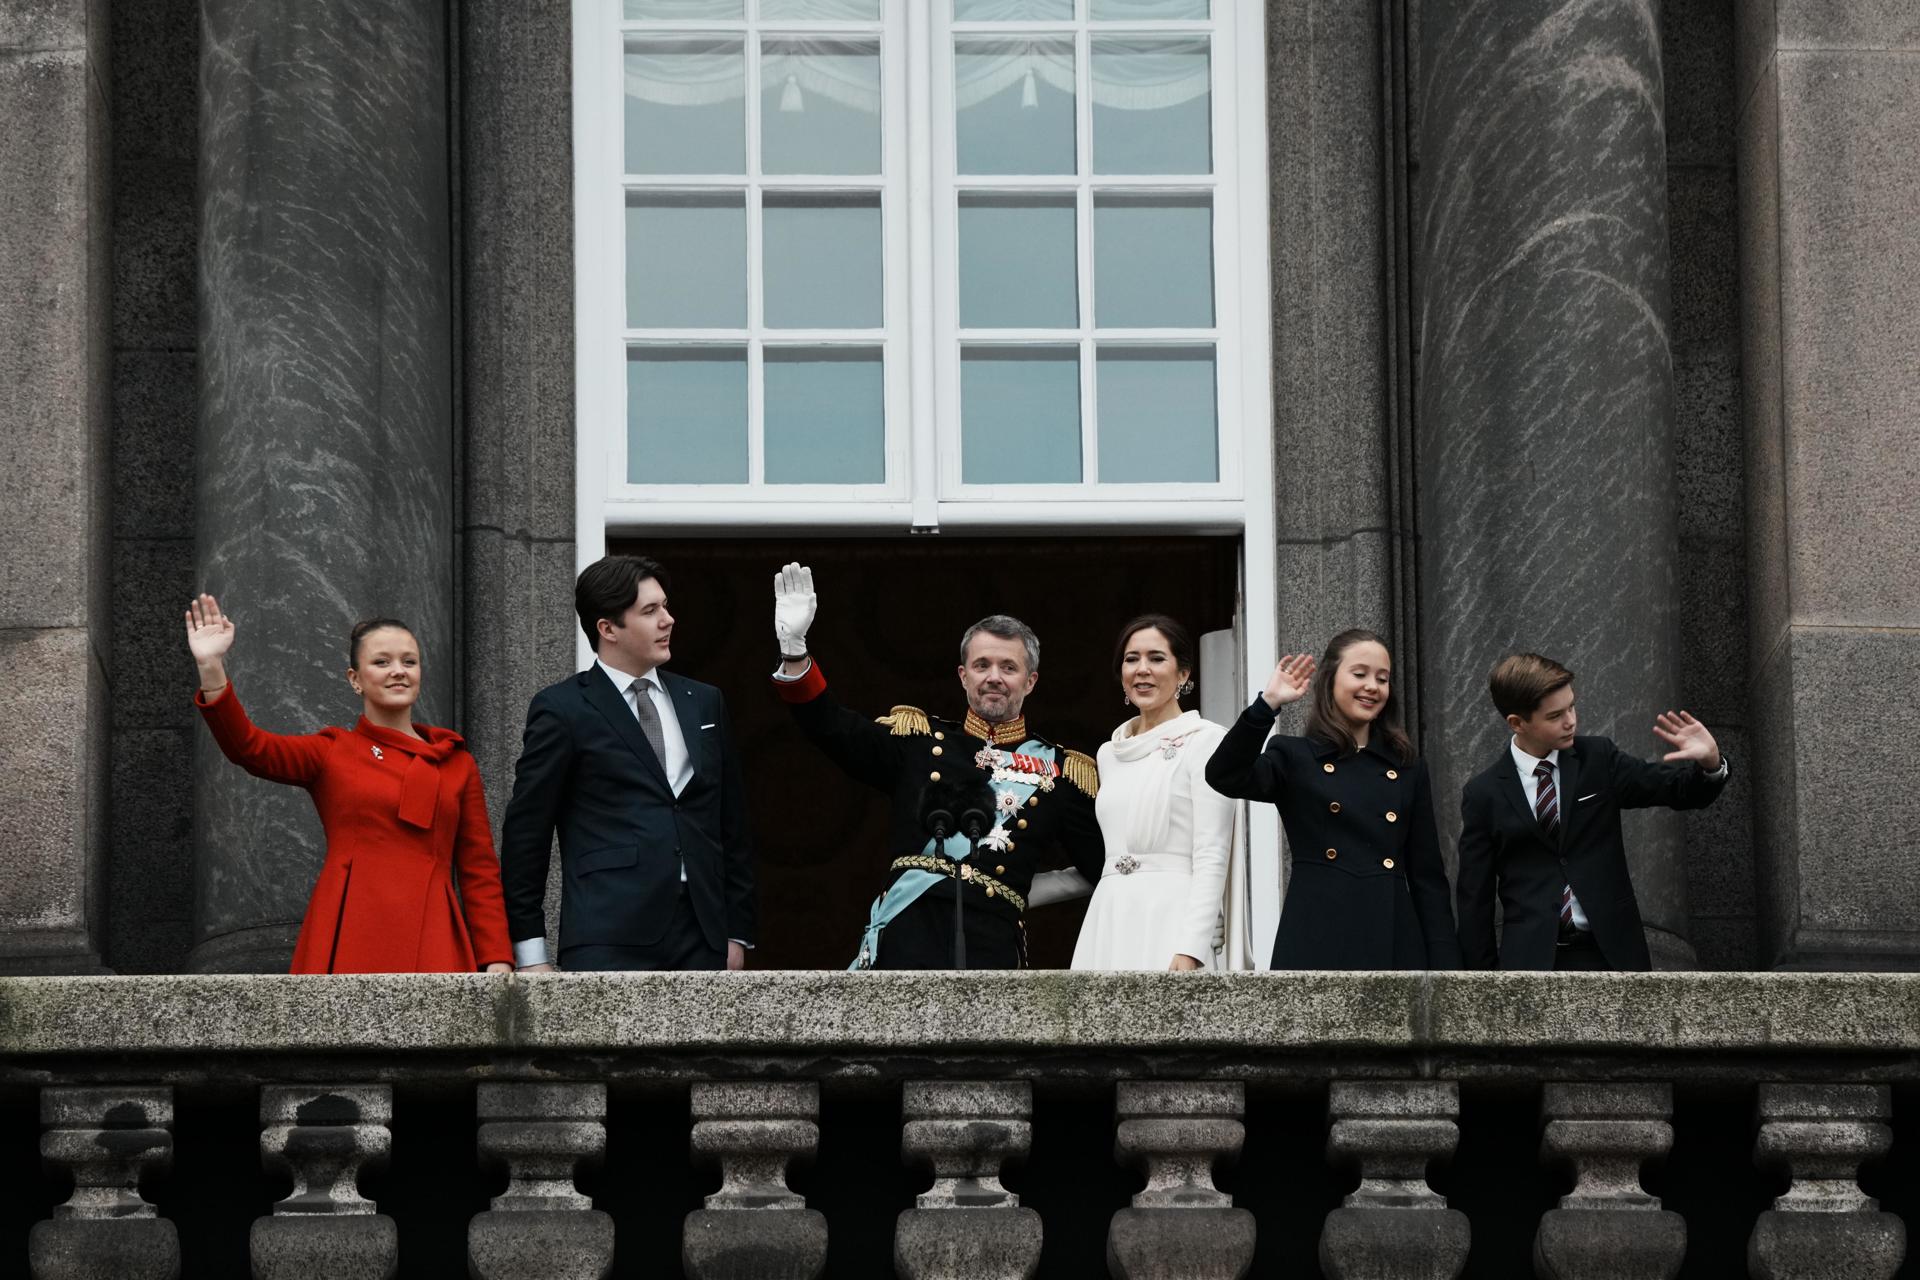 La familia real danesa saluda desde el balcón del palacio de Christiansborg este domingo tras la proclamación de Federico X como rey de Dinamarca. EFE/EPA/THOMAS TRAASDAHL DENMARK OUT